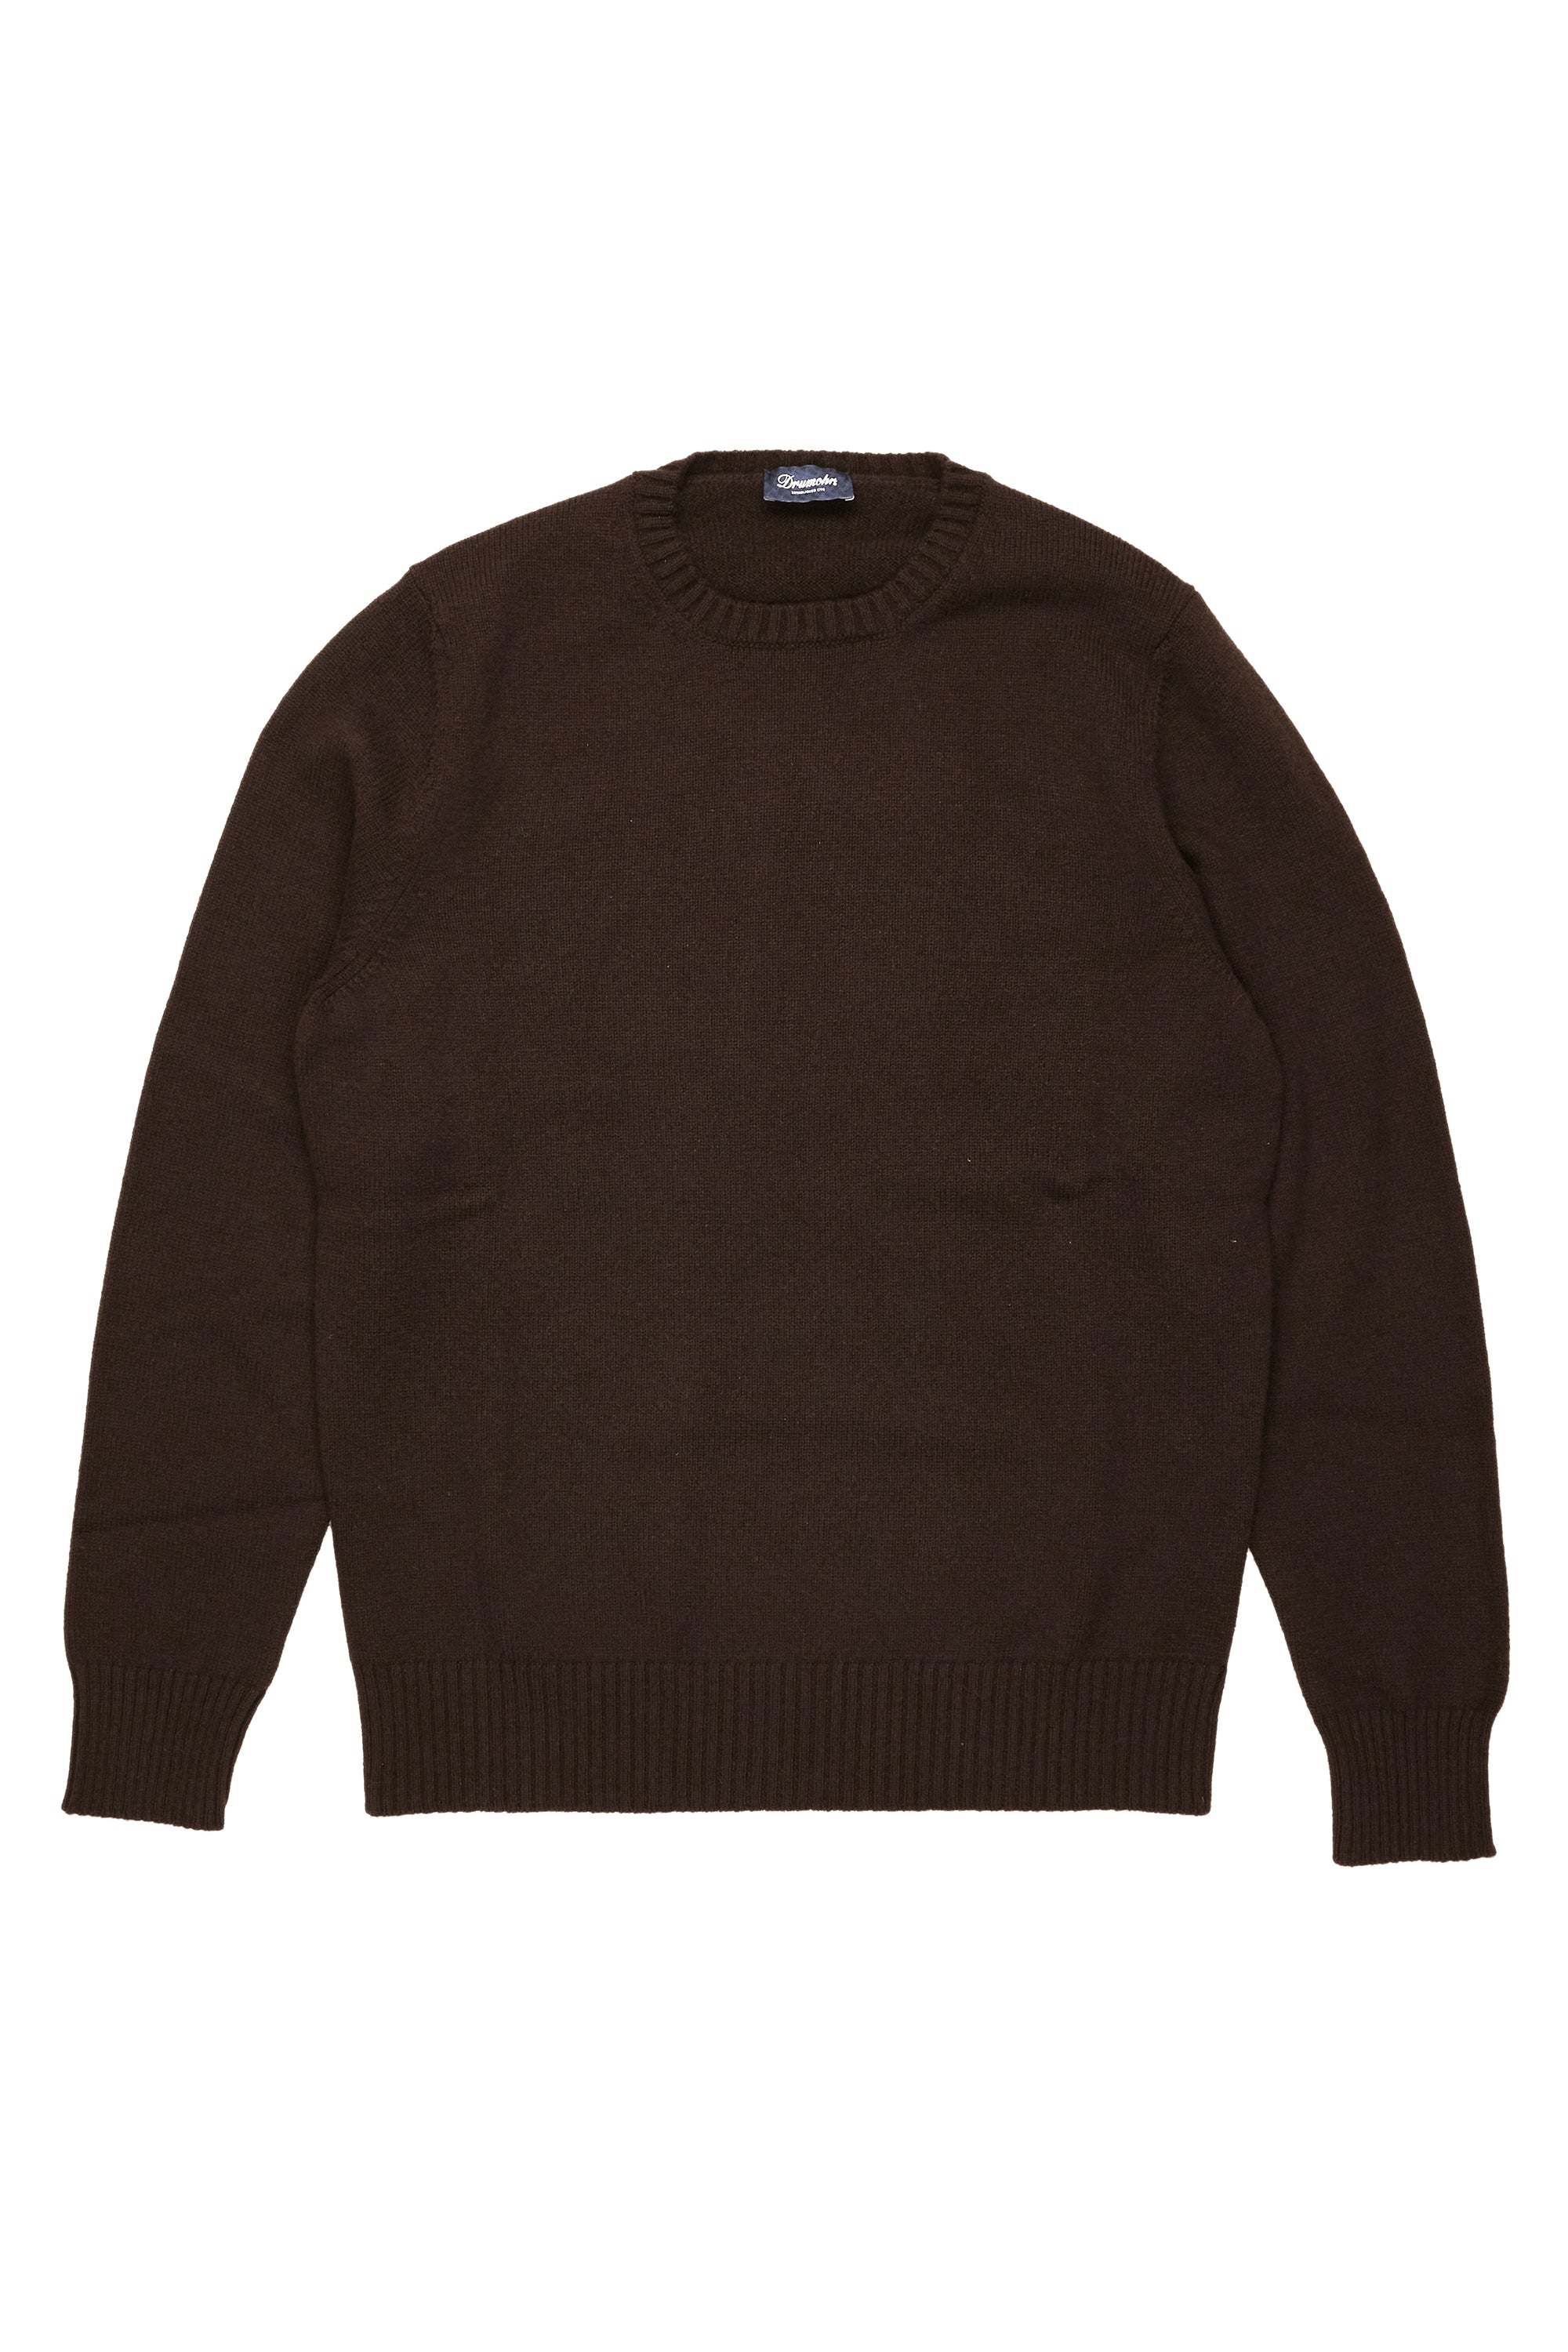 Drumohr Testa Di Moro LS Solid Cashmere Crewneck Sweater